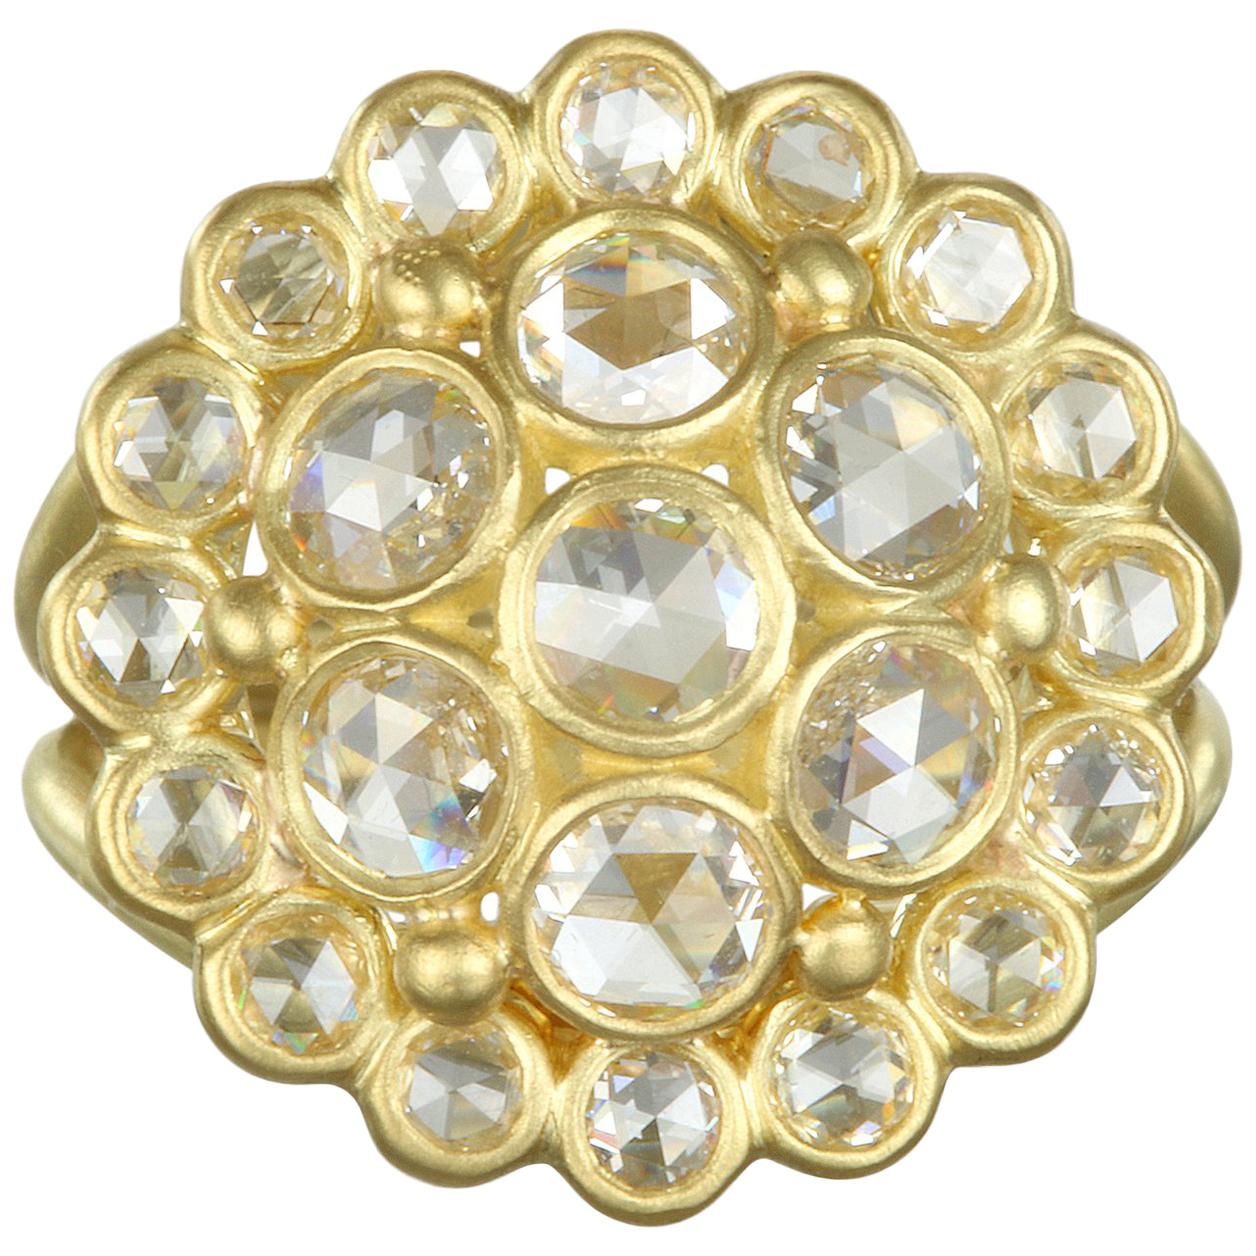 Der Faye Kim 18 Karat Gold Rose Cut Diamond Dome Ring ist reich an Brillanz und Substanz. Dies ist der Inbegriff eines Statement-Rings.  Jeder einzelne Diamant im Rosenschliff wurde in sorgfältiger Handarbeit in 18 Karat Gold gefasst, um einen